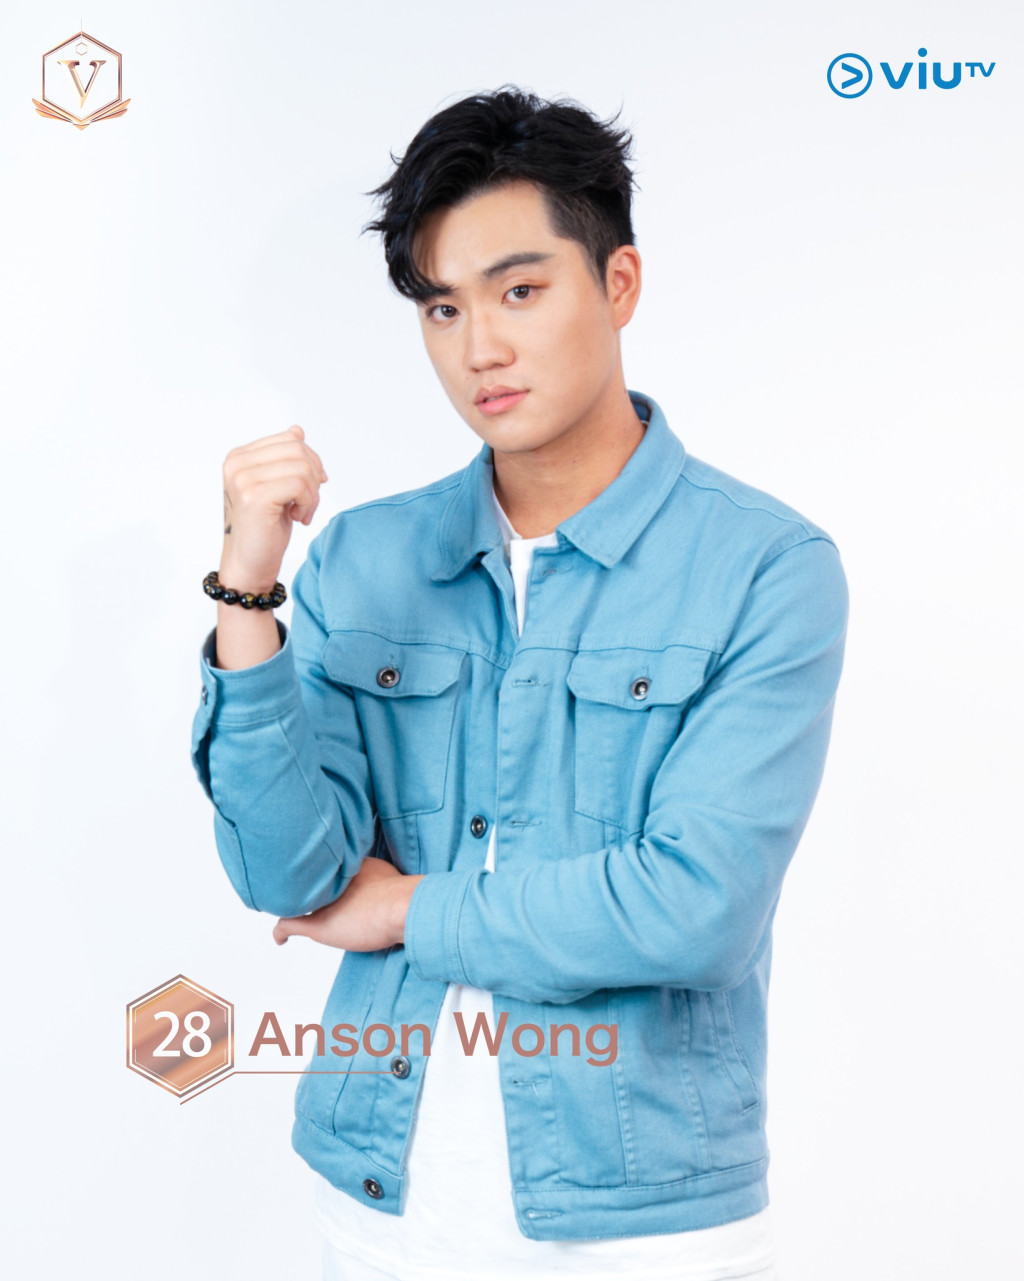 王俊文（Anson Wong） 年龄： 25 职业： 学生 擅长： 唱歌、弹结他、弹钢琴 IG：ansonwcm